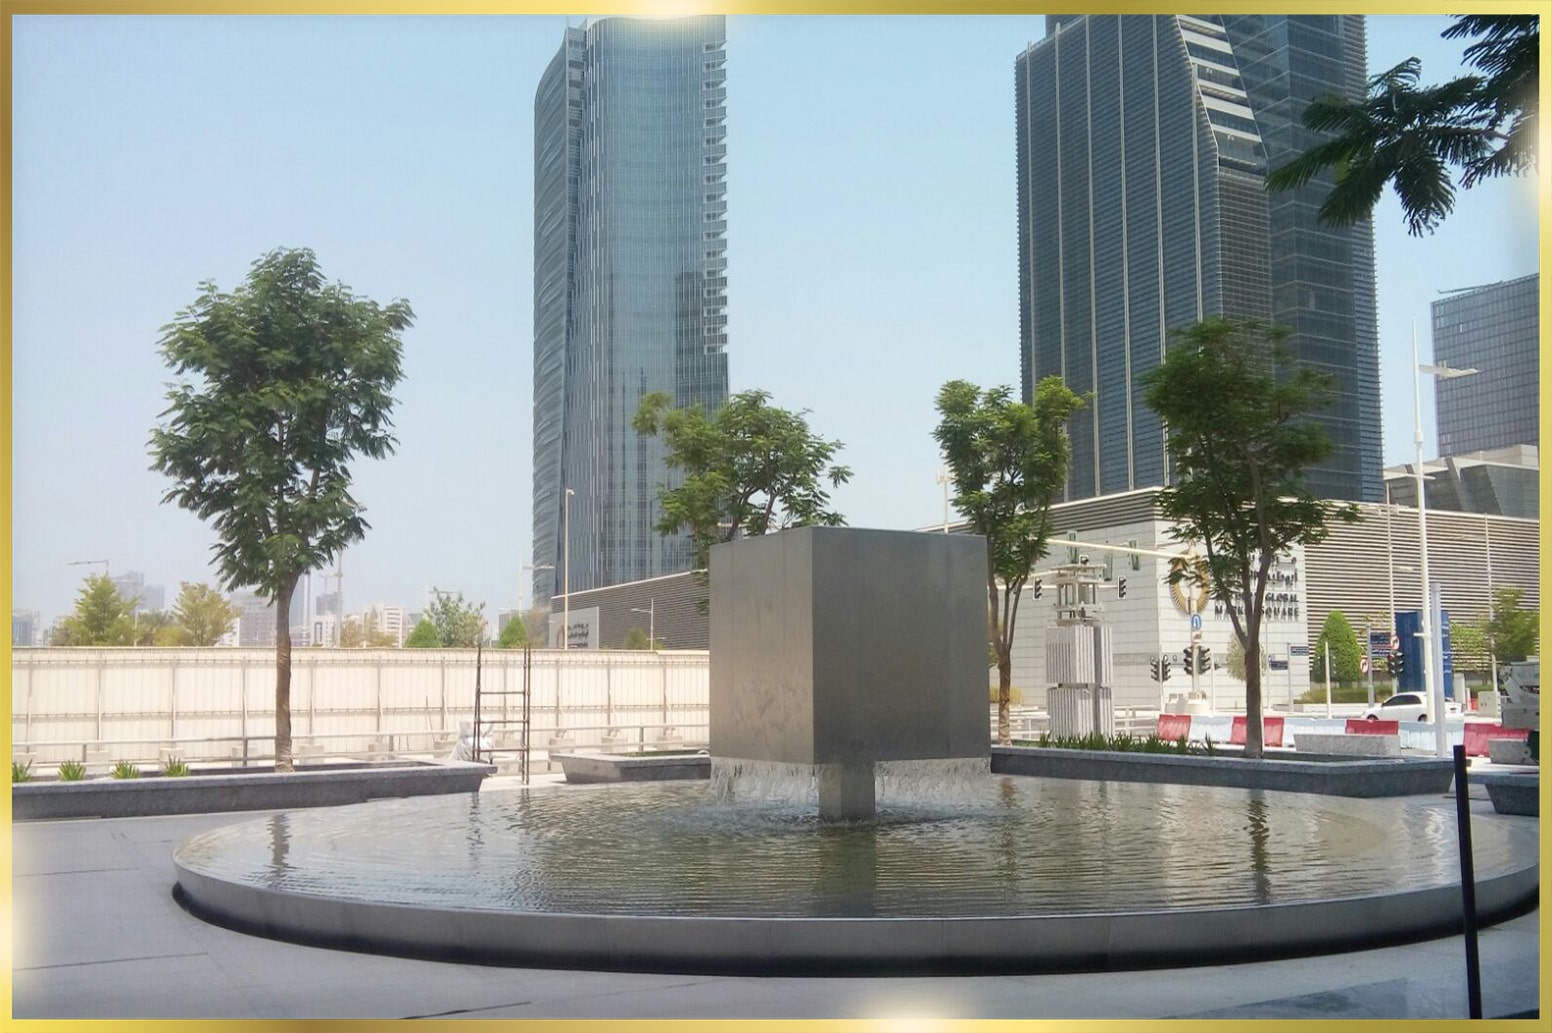 Stainless Steel Landscape Design in Al Hilal Bank